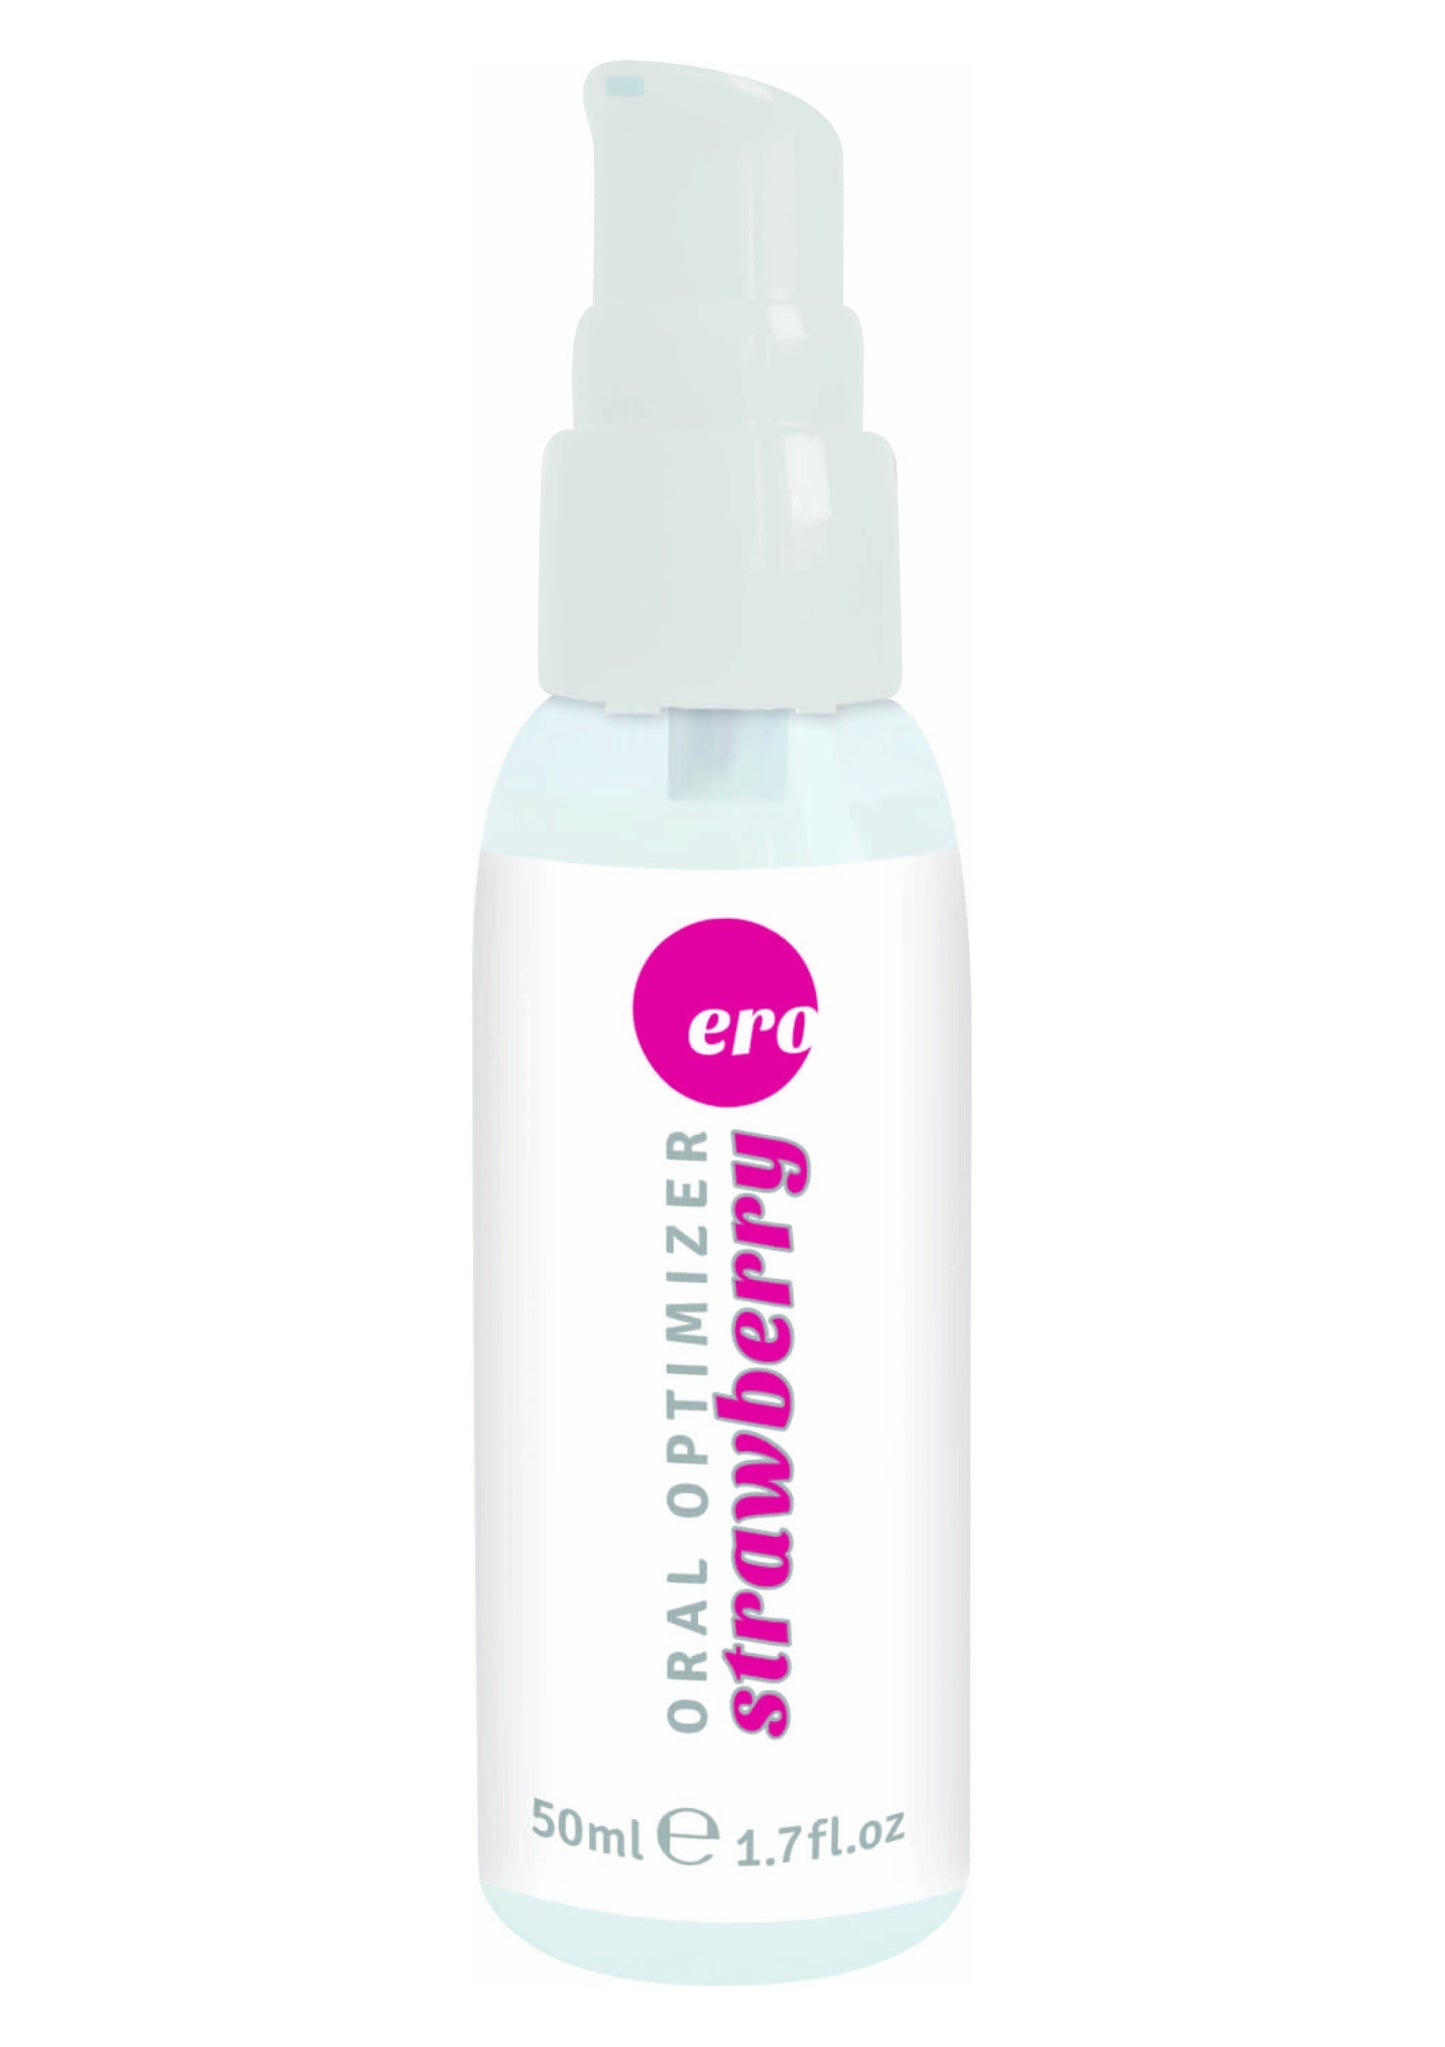 spray gel intimo stimolatore per sesso orale commestibile aromatizzato fragola